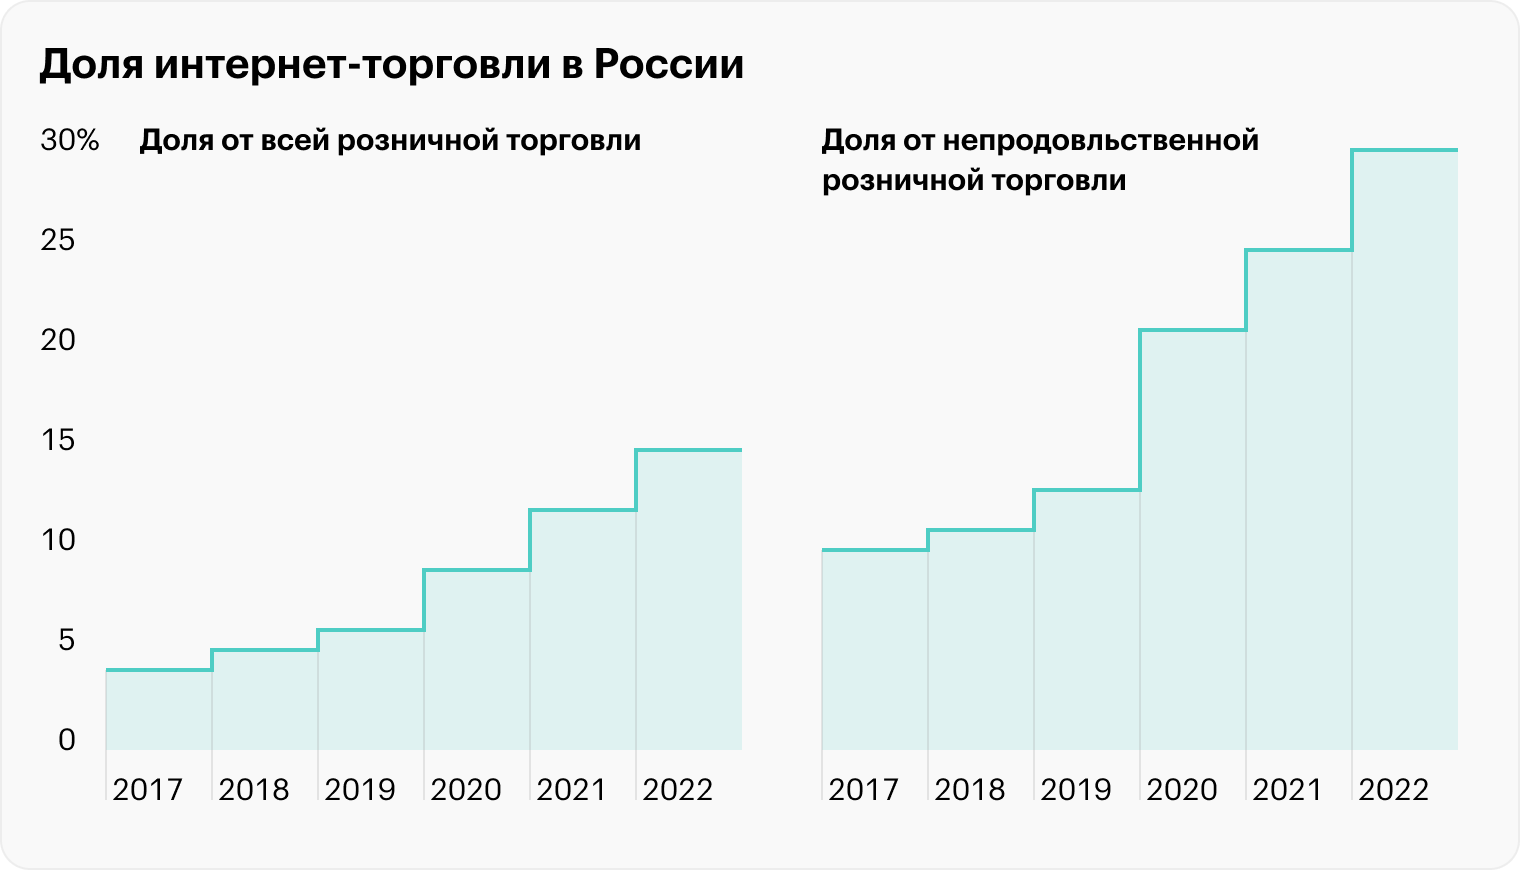 Источник: Data Insight, отчет «Интернет-торговля в России 2022», стр. 63 (64)